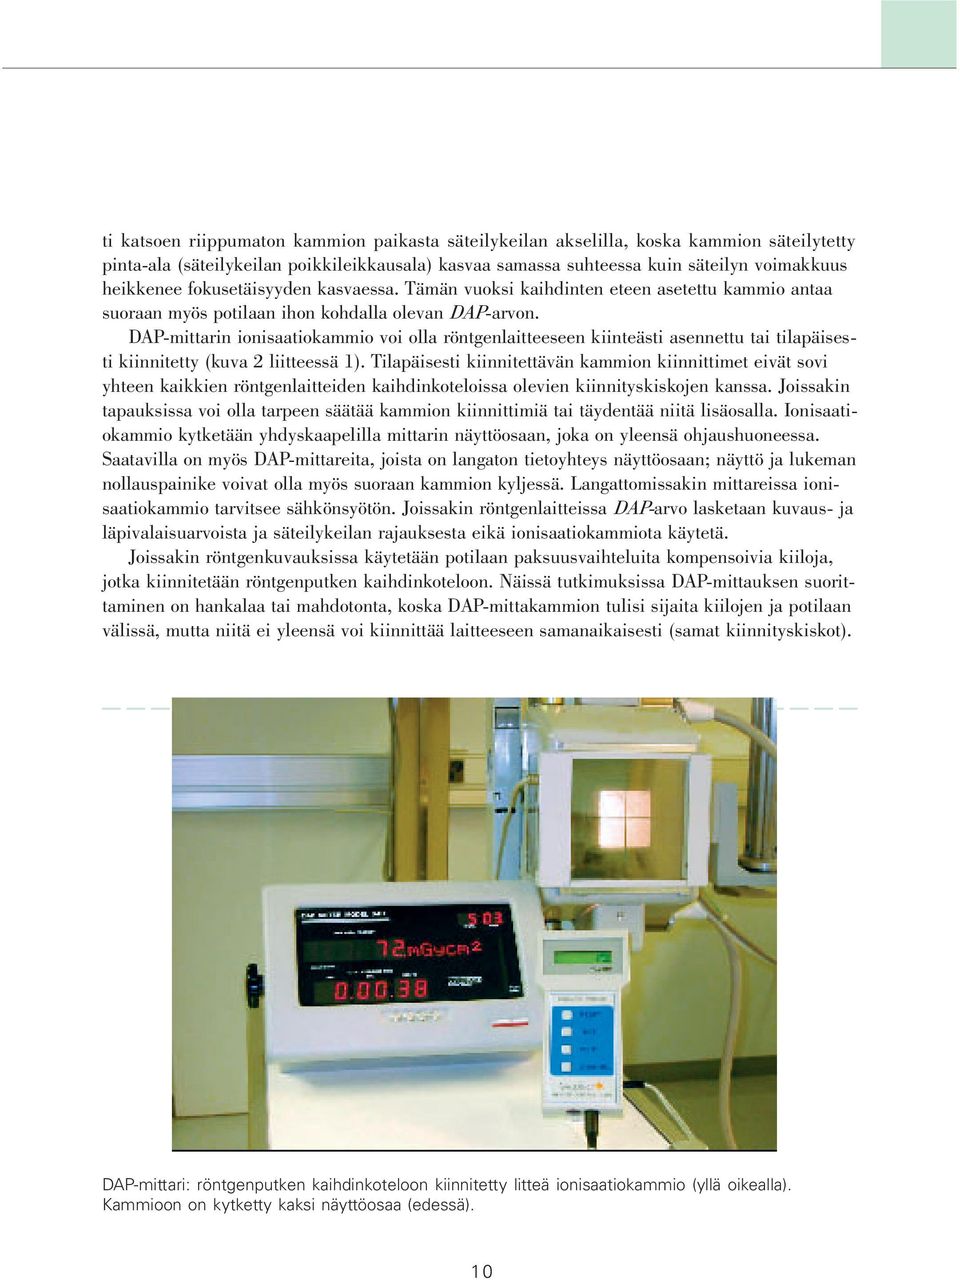 DAP-mittarin ionisaatiokammio voi olla röntgenlaitteeseen kiinteästi asennettu tai tilapäisesti kiinnitetty (kuva 2 liitteessä 1).